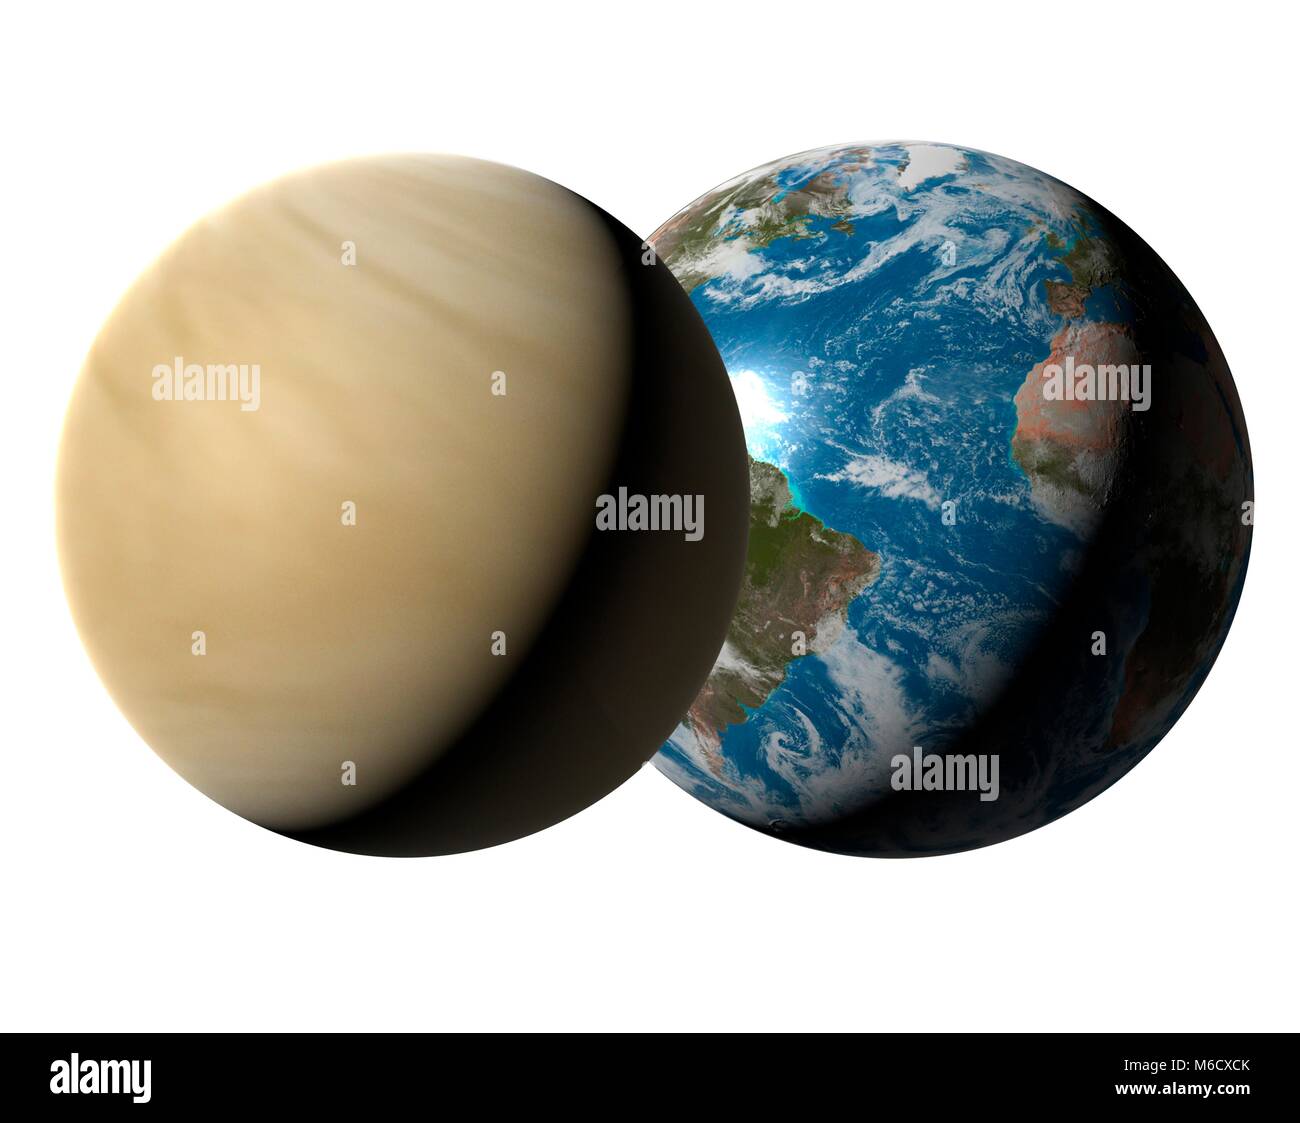 Per il confronto di immagini delle dimensioni della Terra (a destra) con il  pianeta Venere. Venere è il secondo pianeta dal sole, con una distanza  media da esso di 0,72 volte la